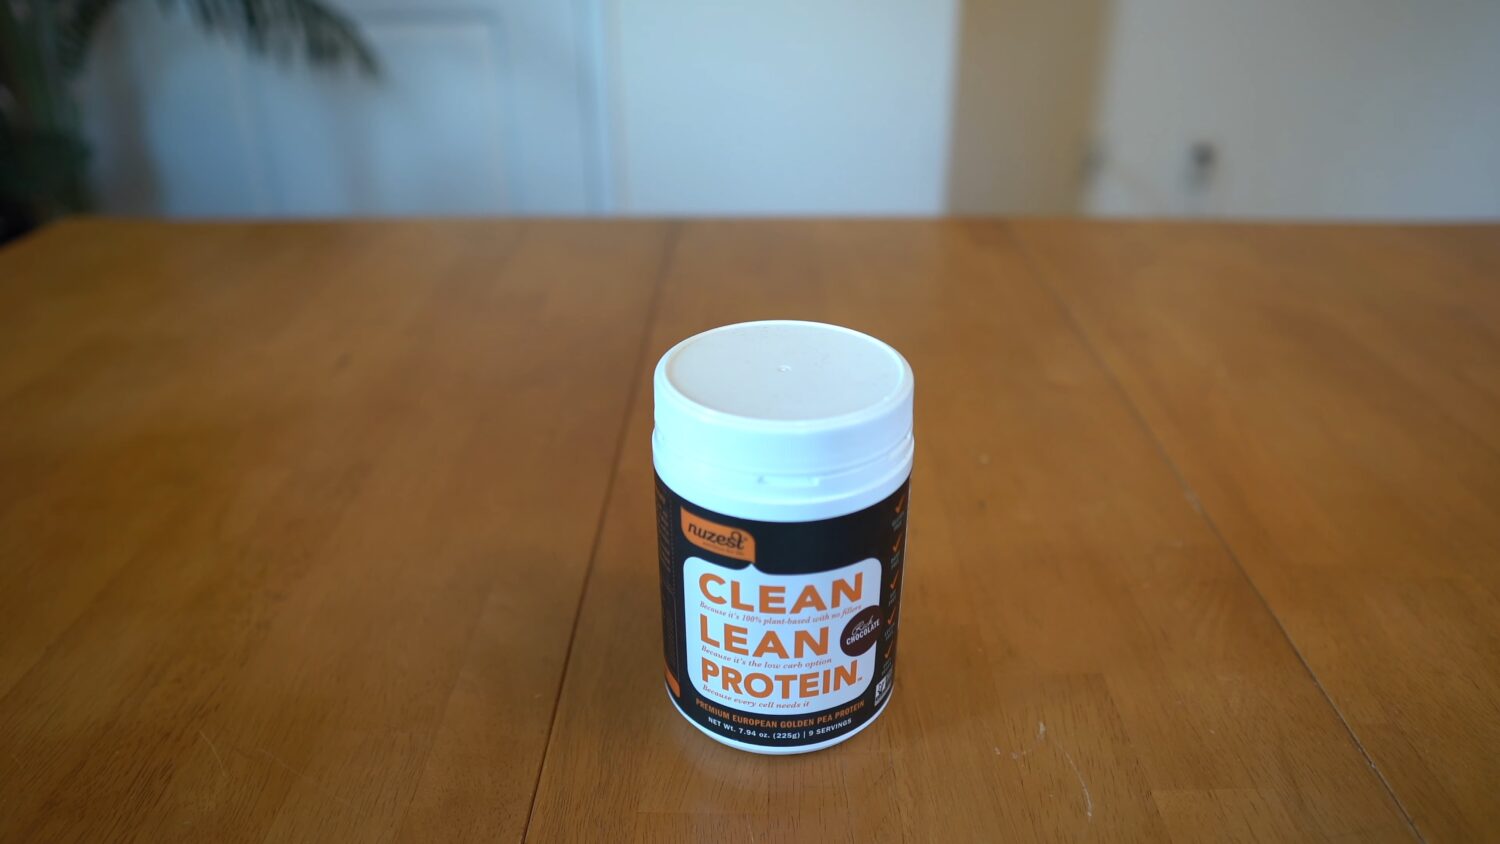 Clean Lean protein powder